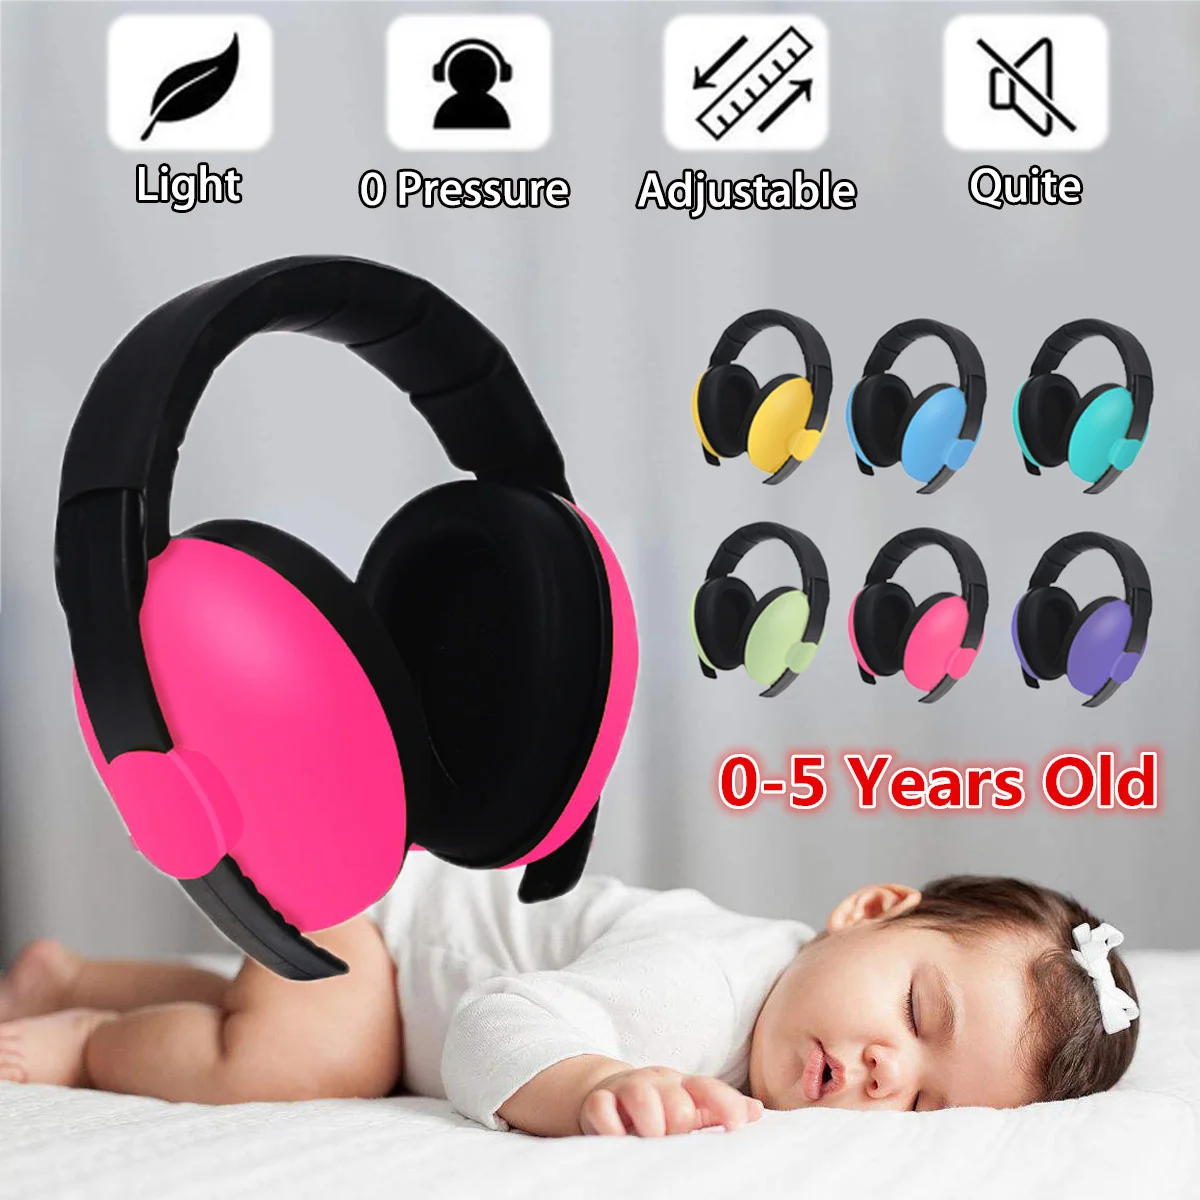 

Наушники для детей 3-5 лет, Защита слуха для детей